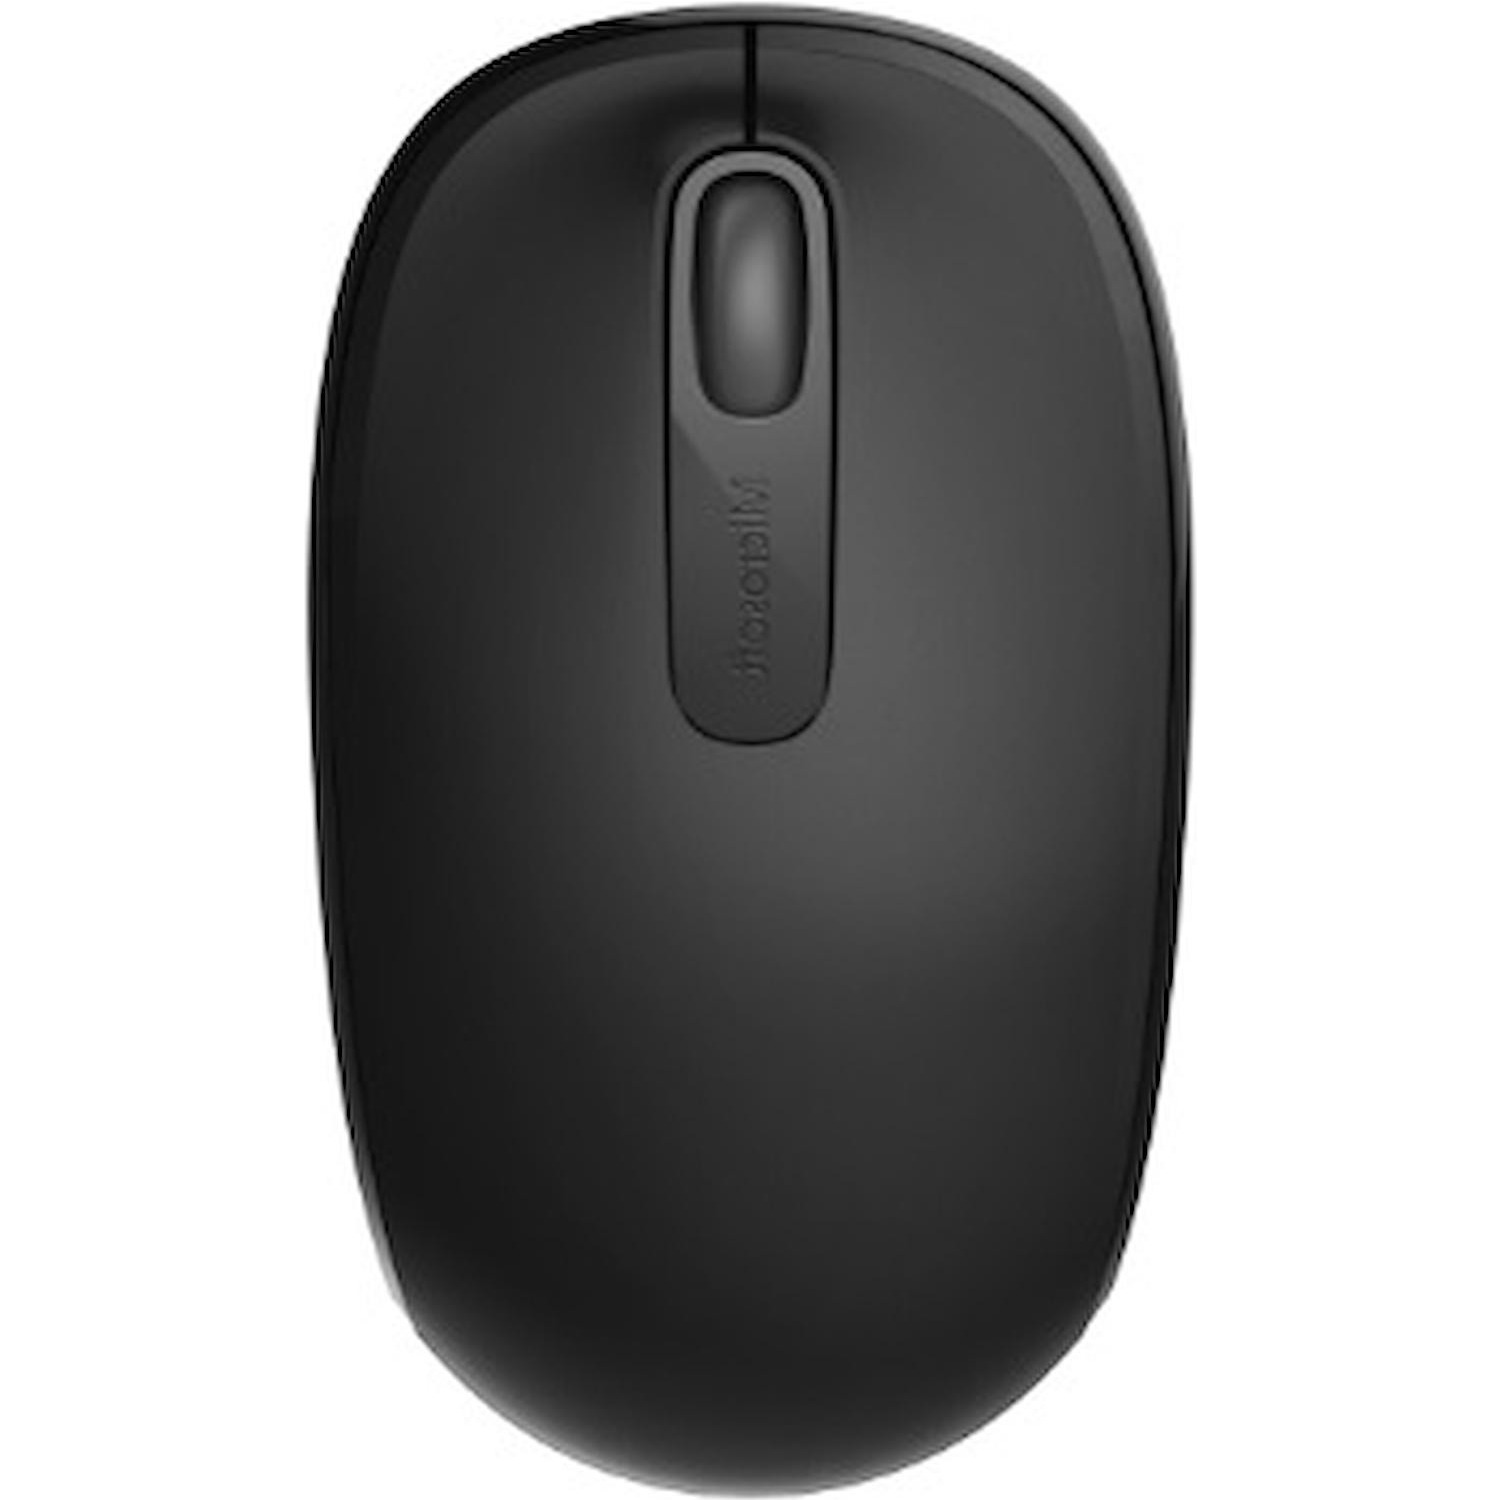 Immagine per Mouse Microsoft ottico wireless 1850 nero da DIMOStore